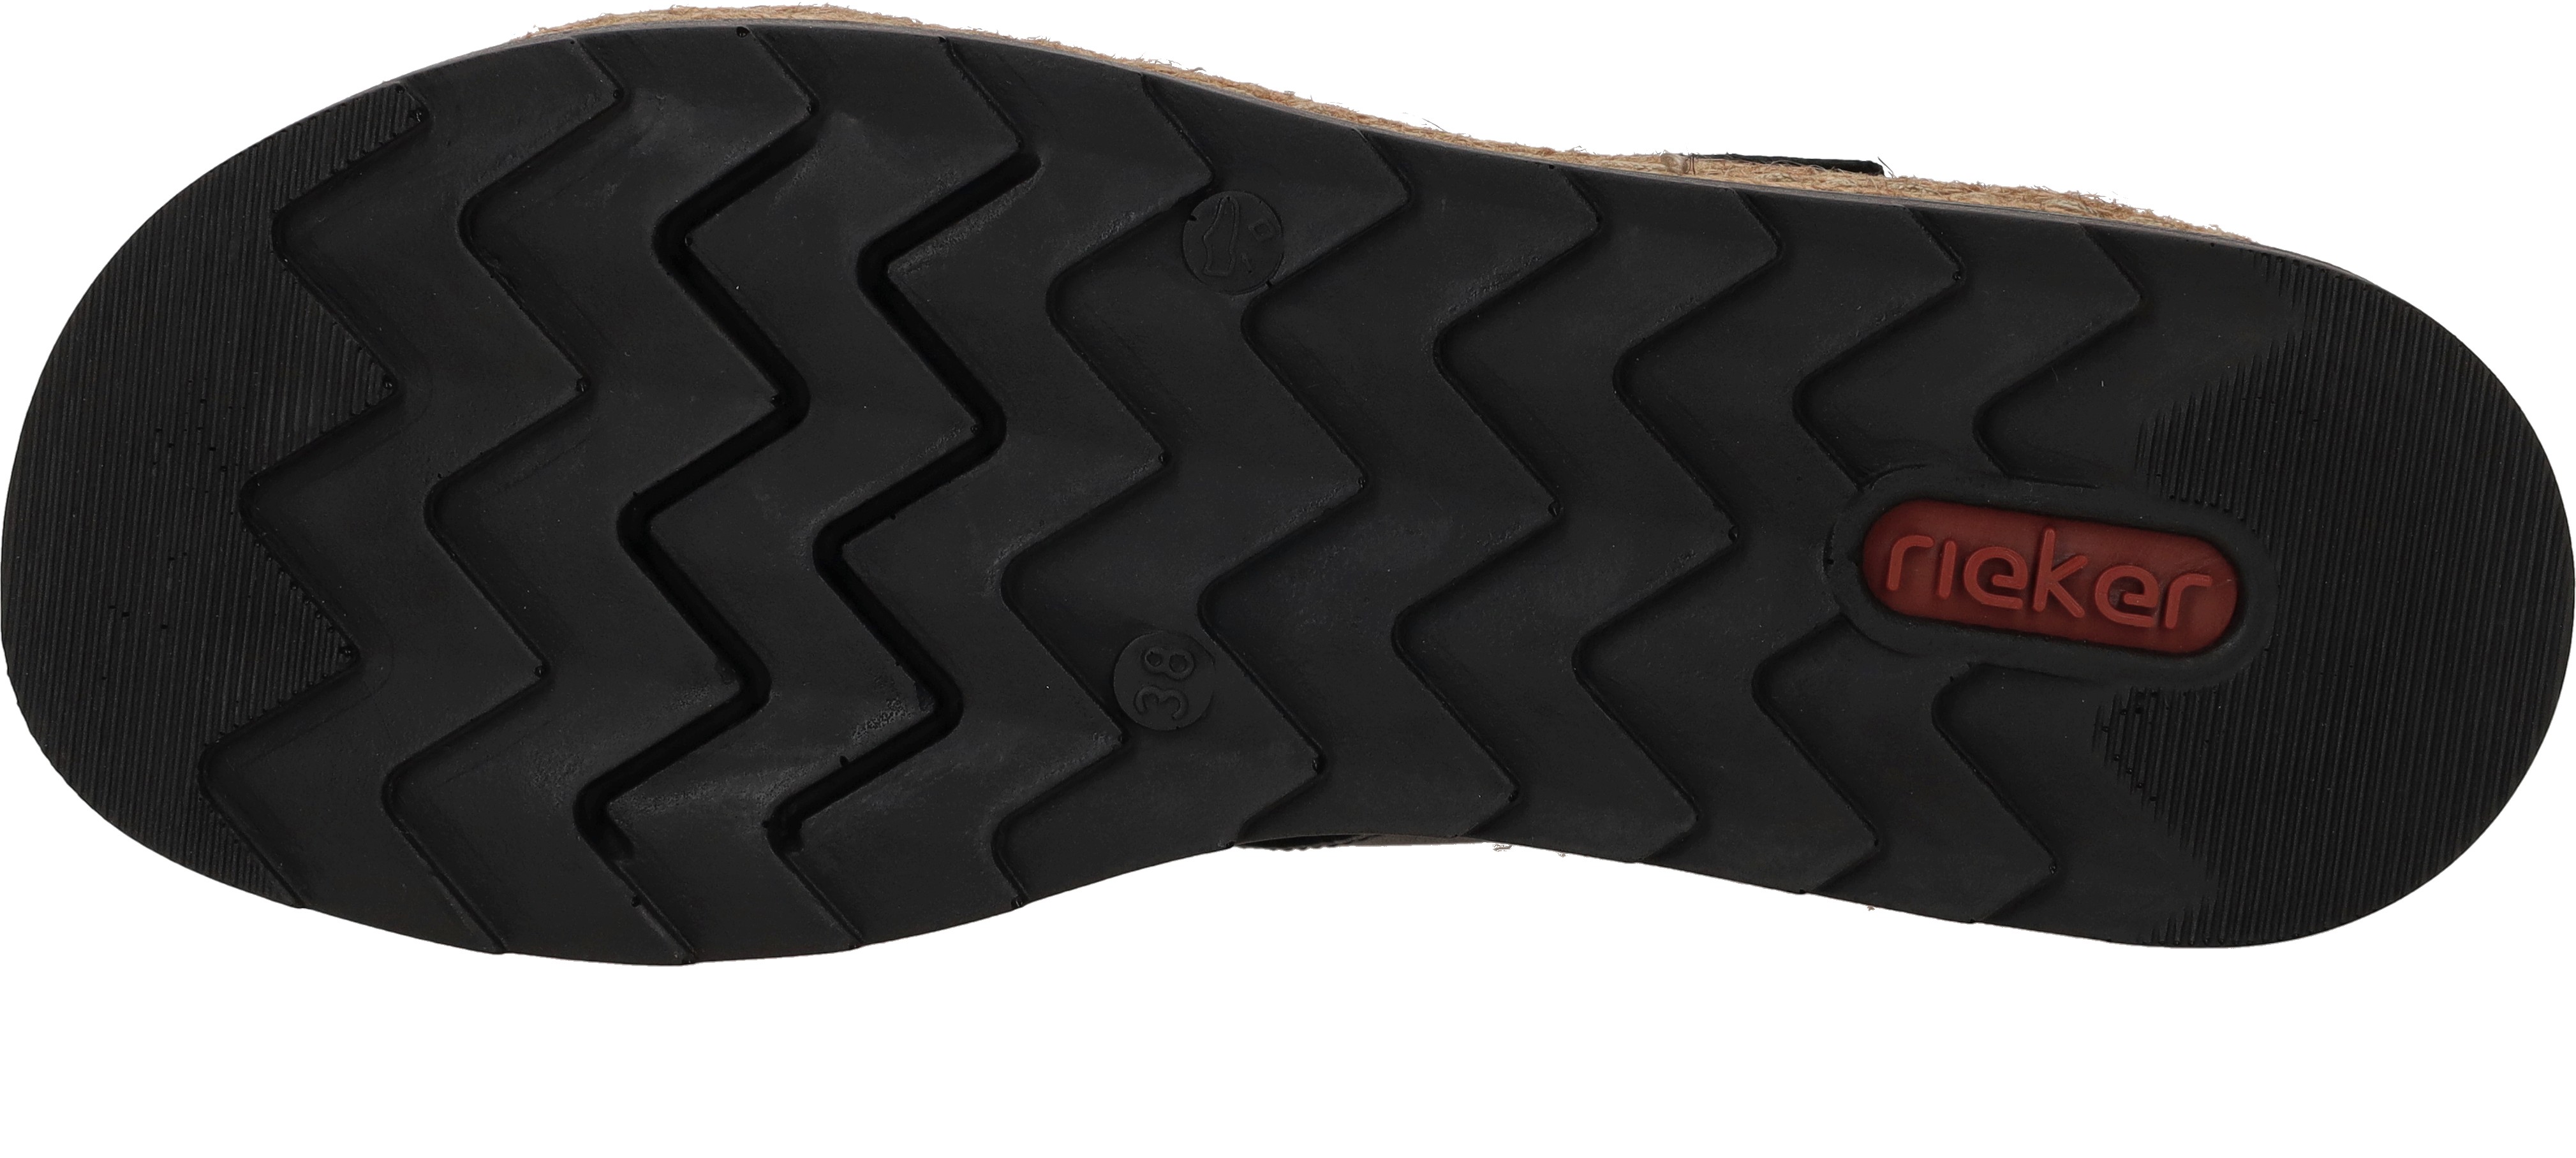 Rieker - Dames schoenen - V7951-00 - Zwart - maat 39